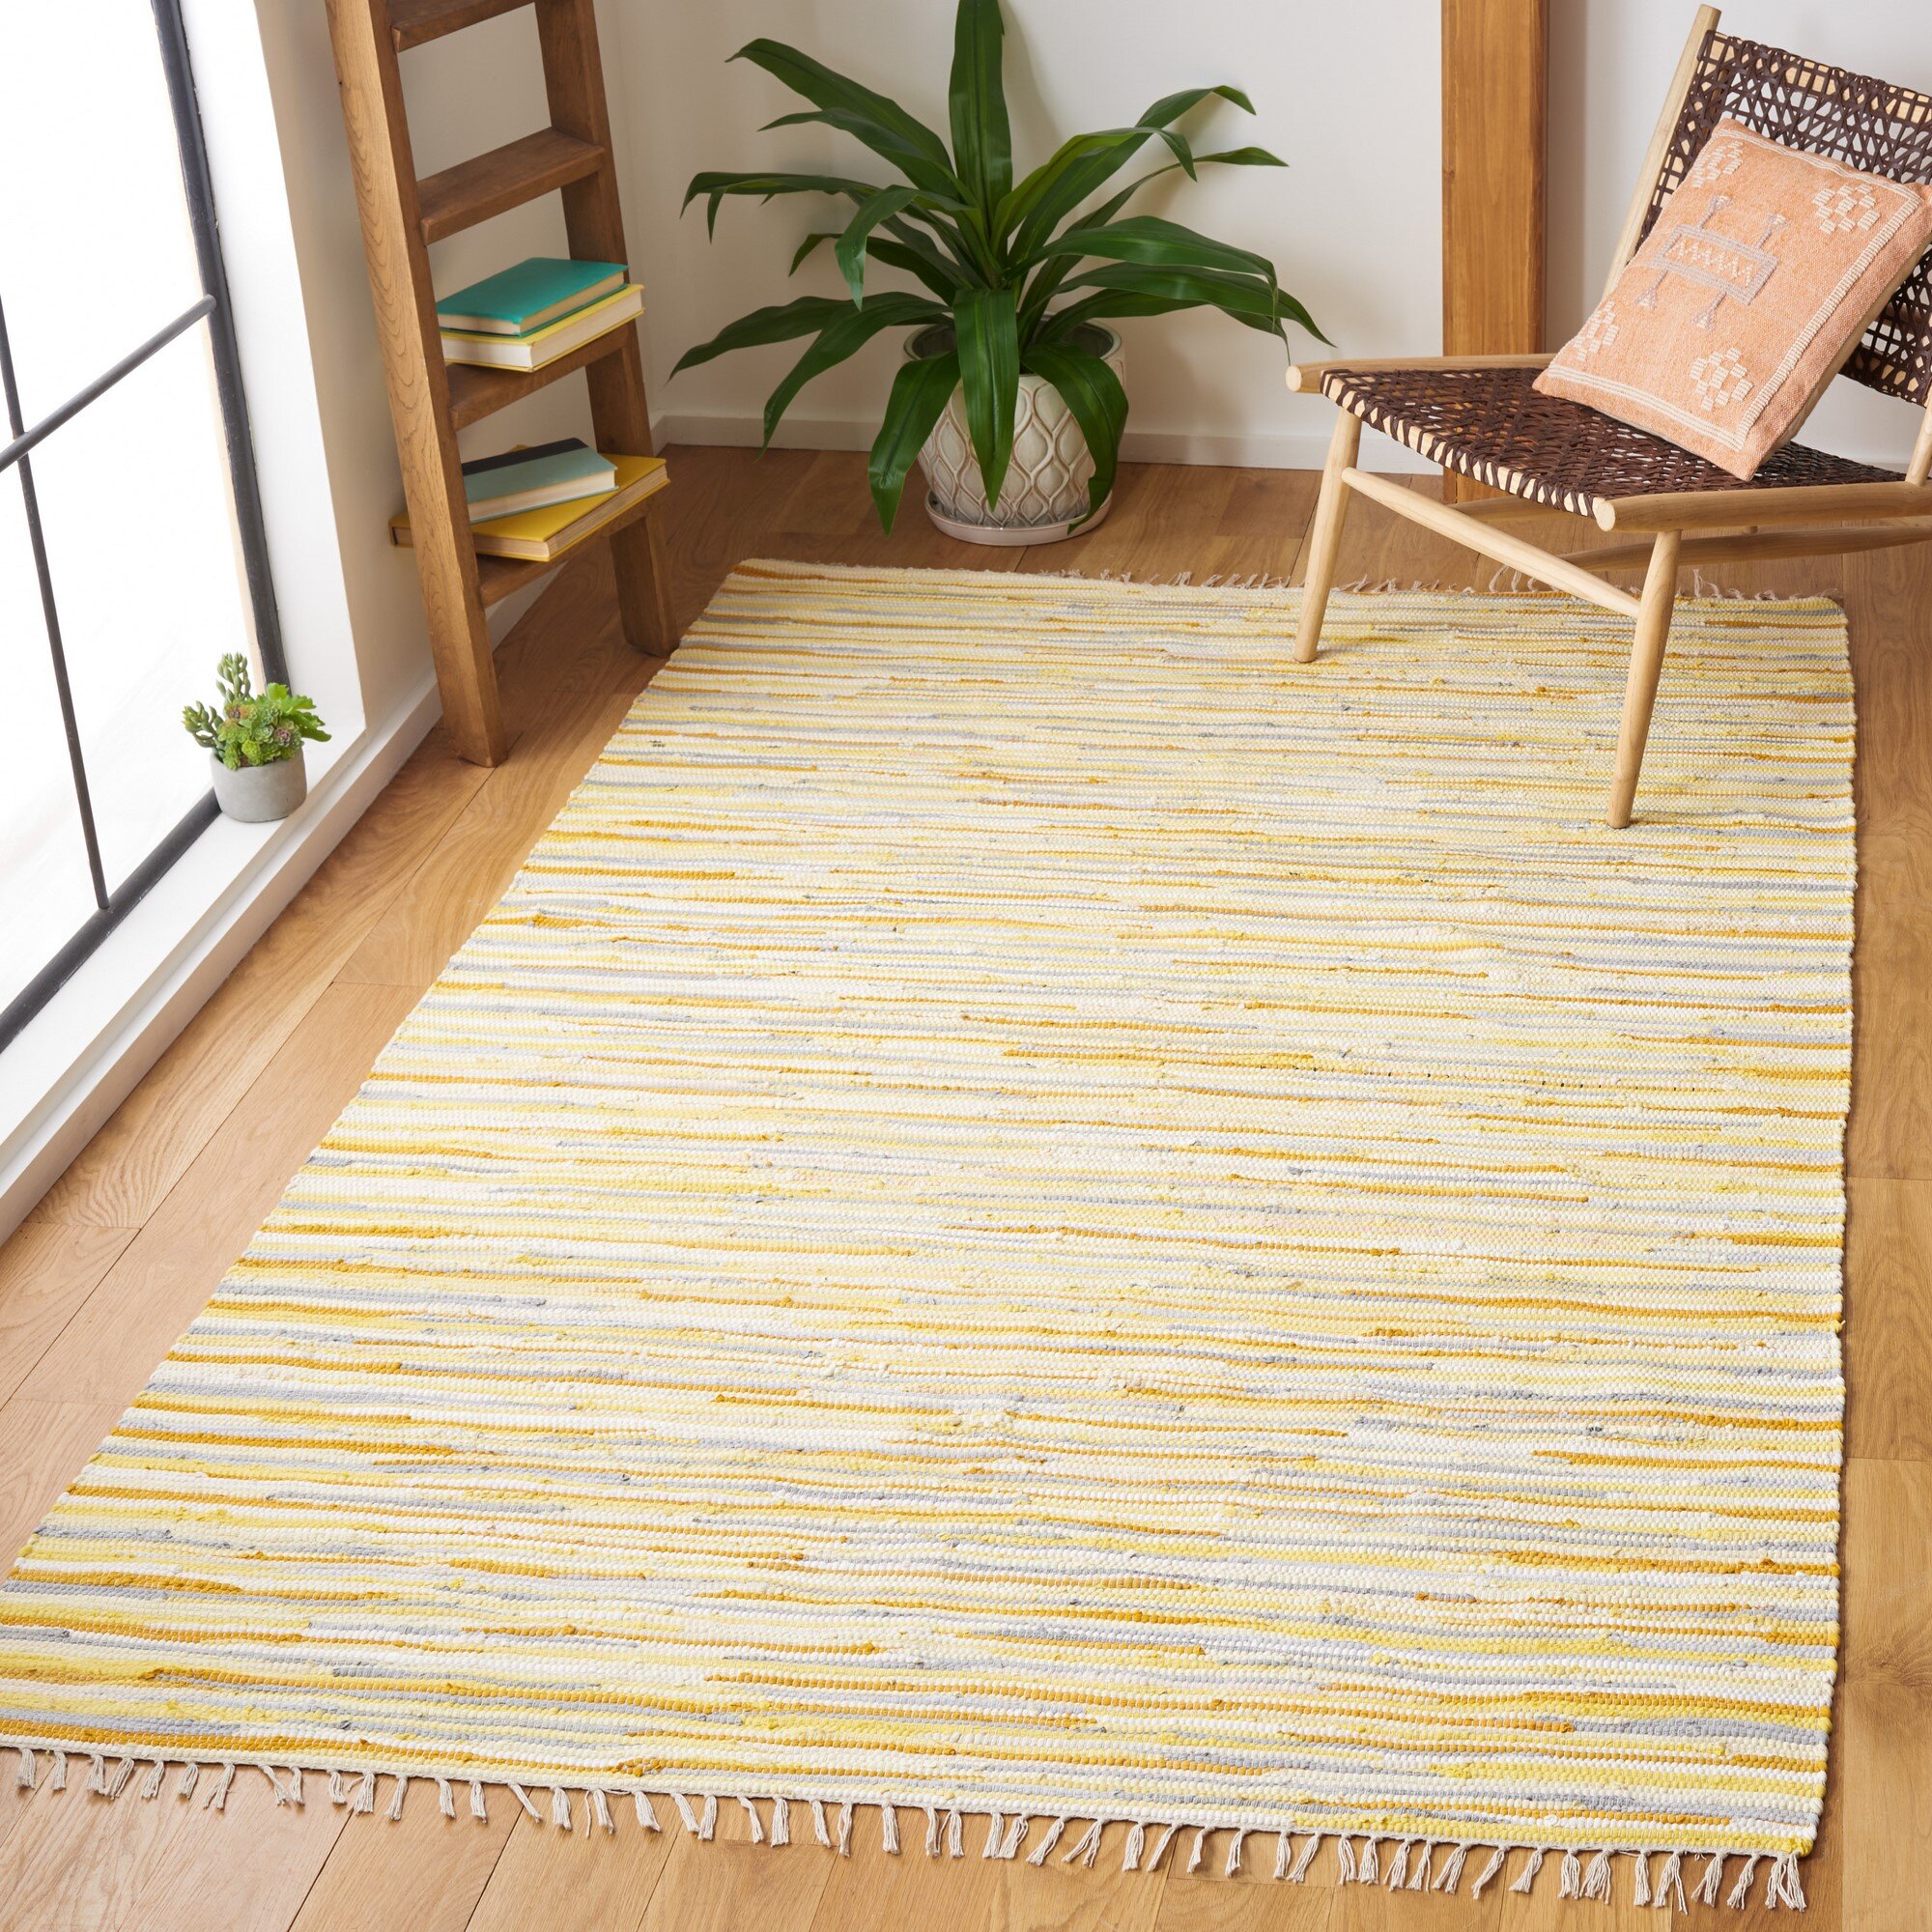 https://assets.wfcdn.com/im/62783084/compr-r85/1403/140383148/burkett-handmade-flatweave-cotton-rug.jpg